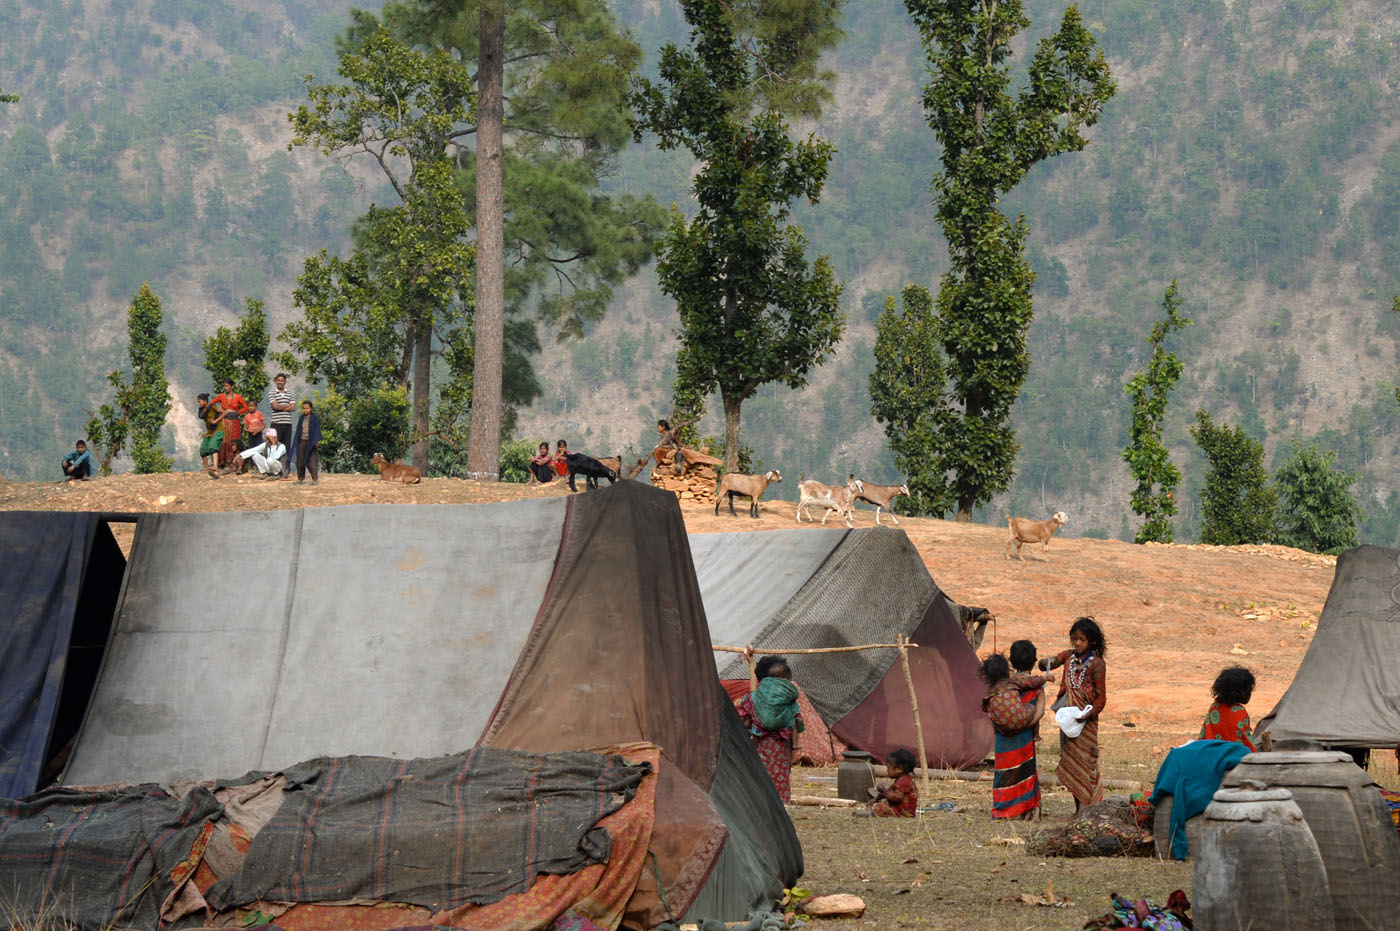 Tunibar - camp Raute et les villageois qui regardent avec curiosité les nomades installer leurs tentes